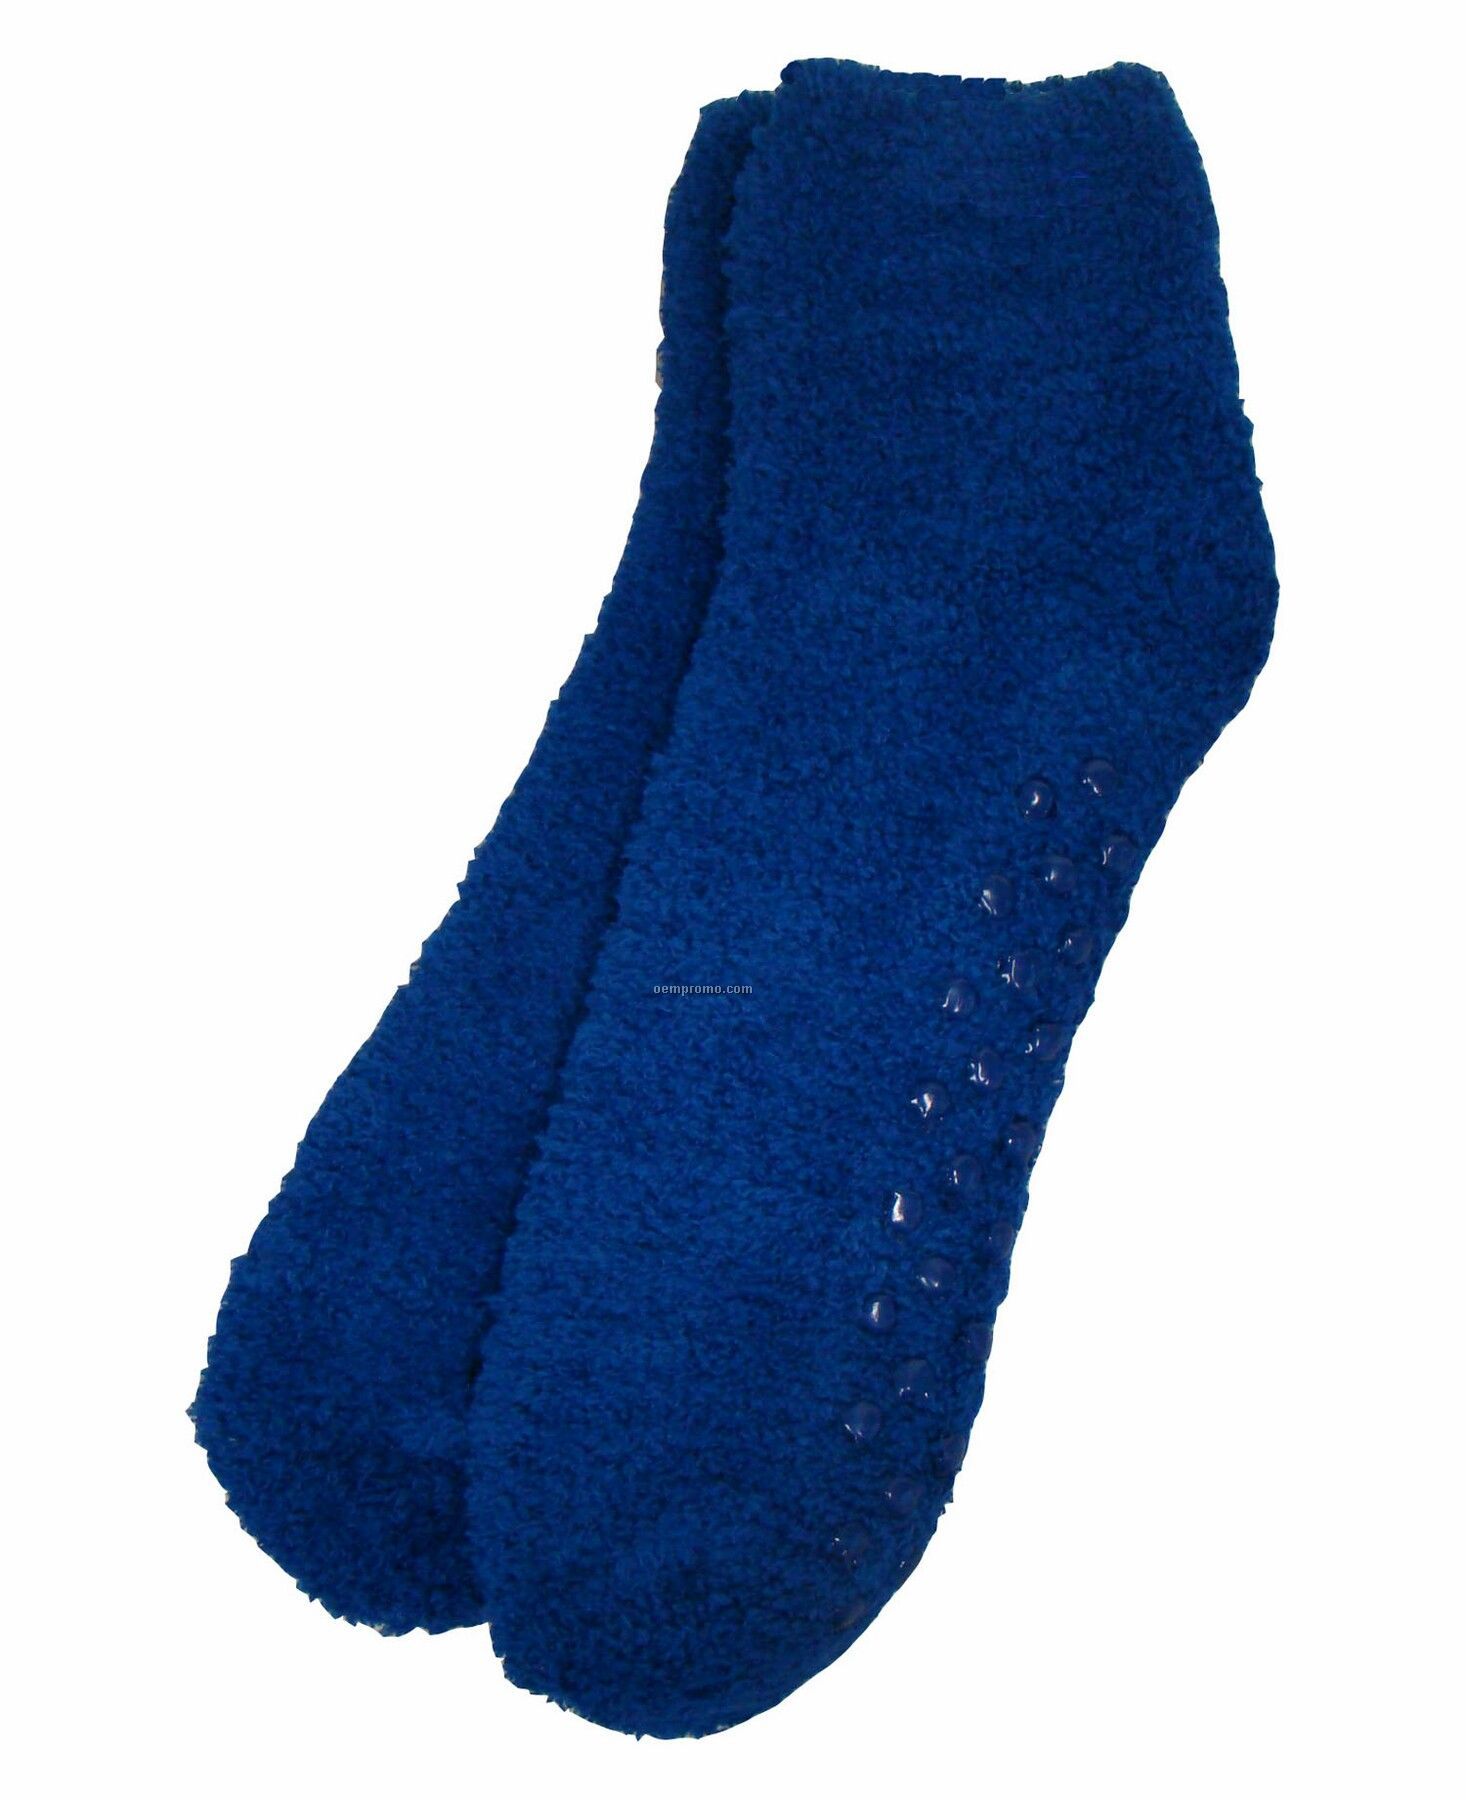 Fuzzy Feet Socks - Blank